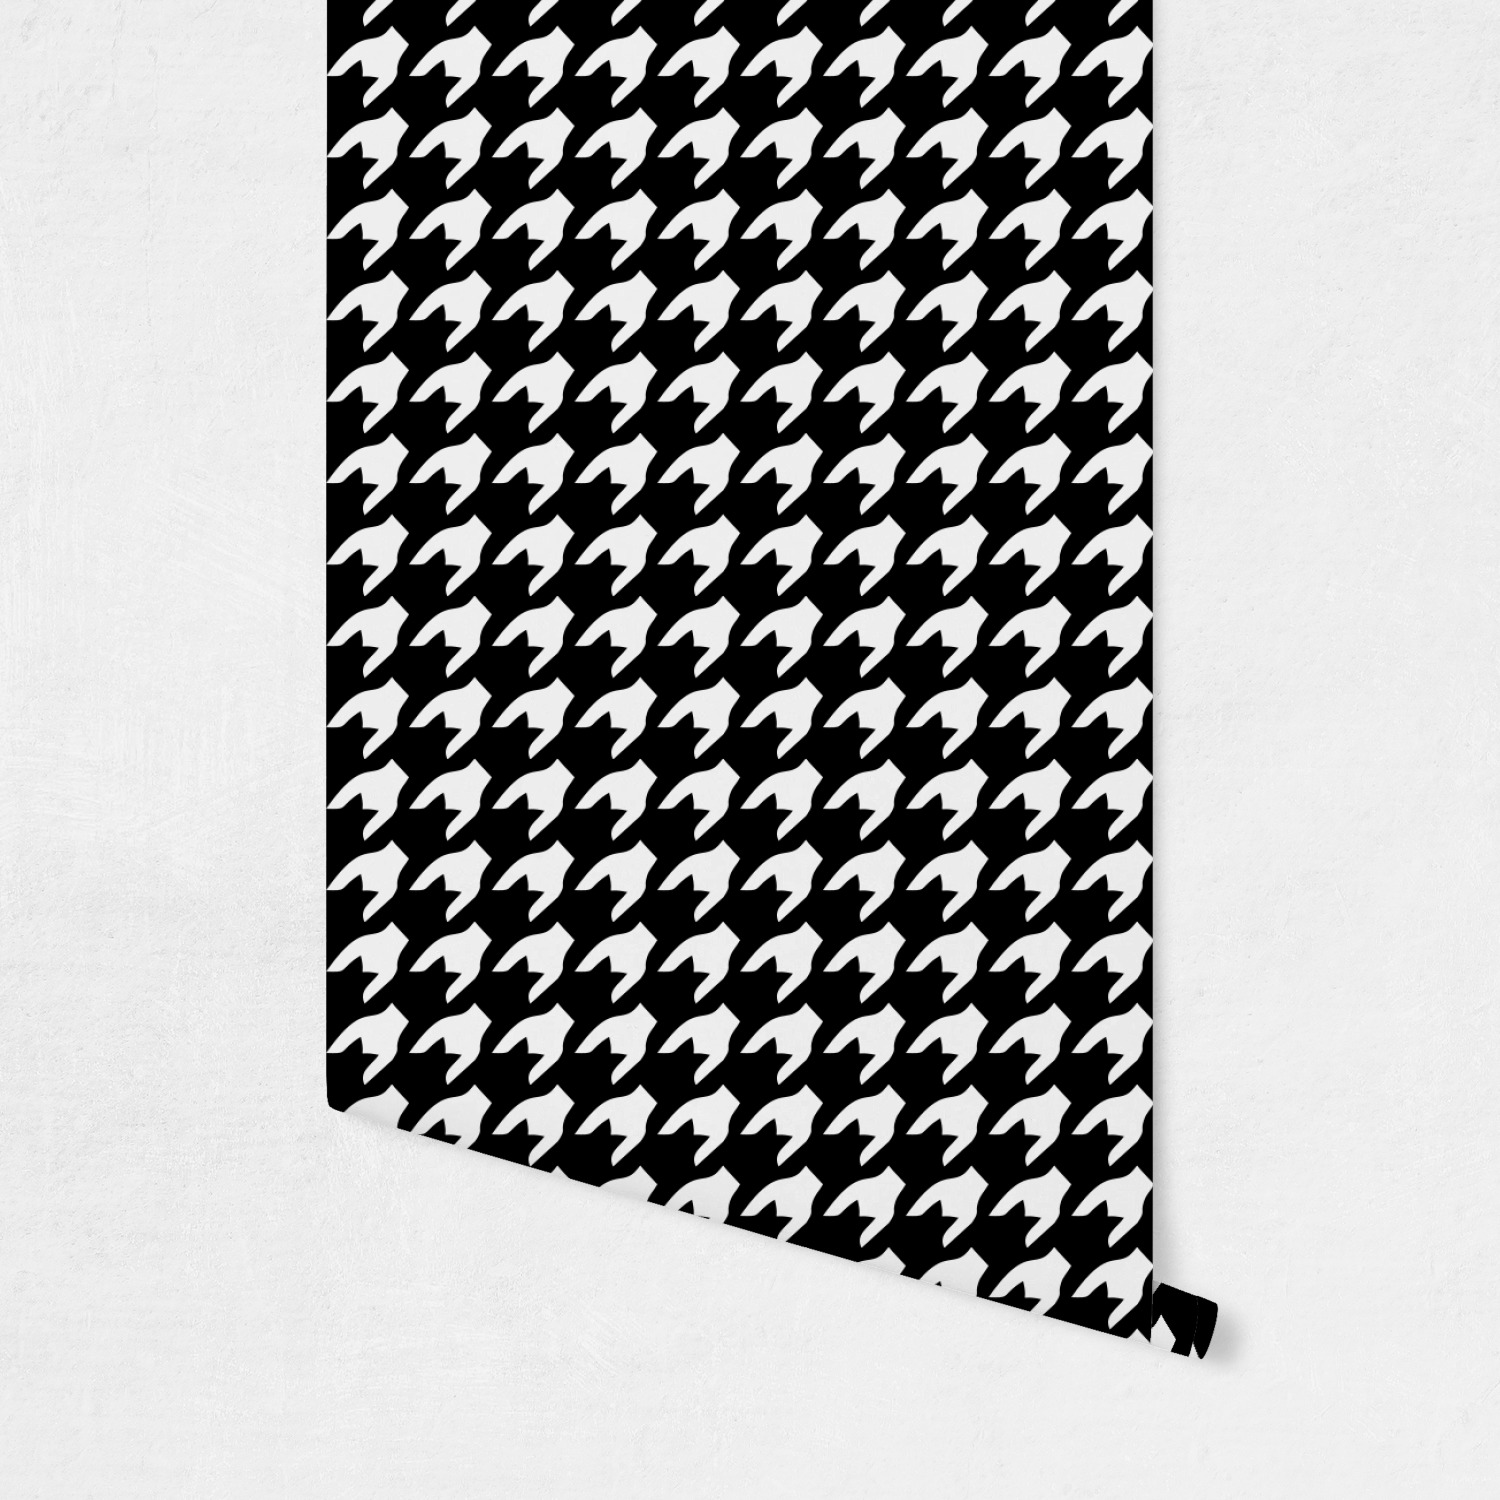 千鳥格子の壁紙,パターン,ライン,設計,黒と白,モノクローム